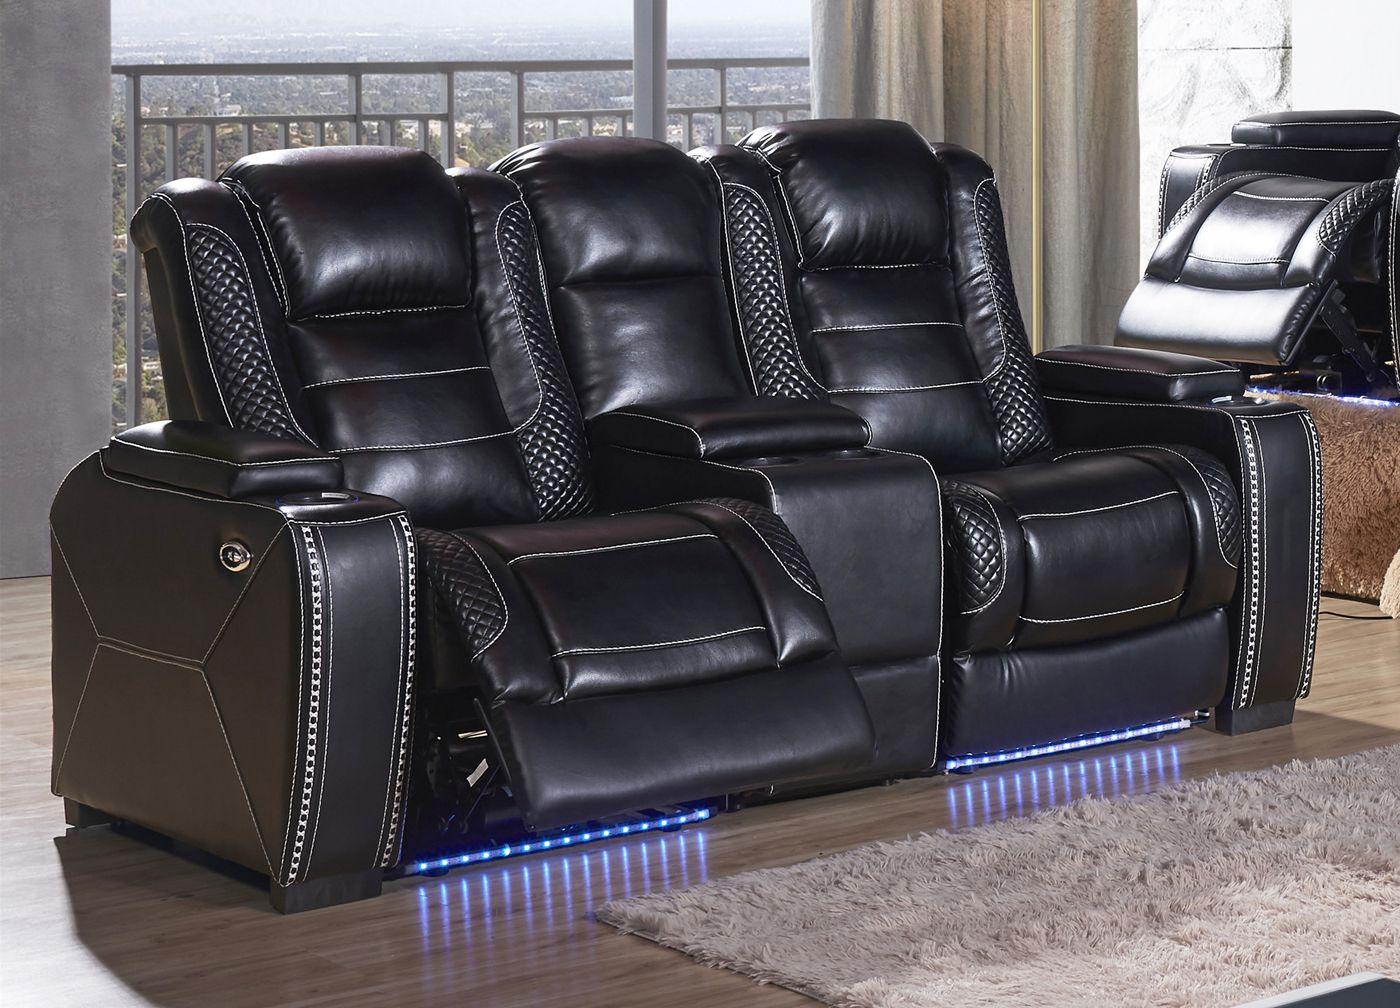 

    
McFerran Furniture SF3816 Recliner Sofa Set Black SF3816-2PC
